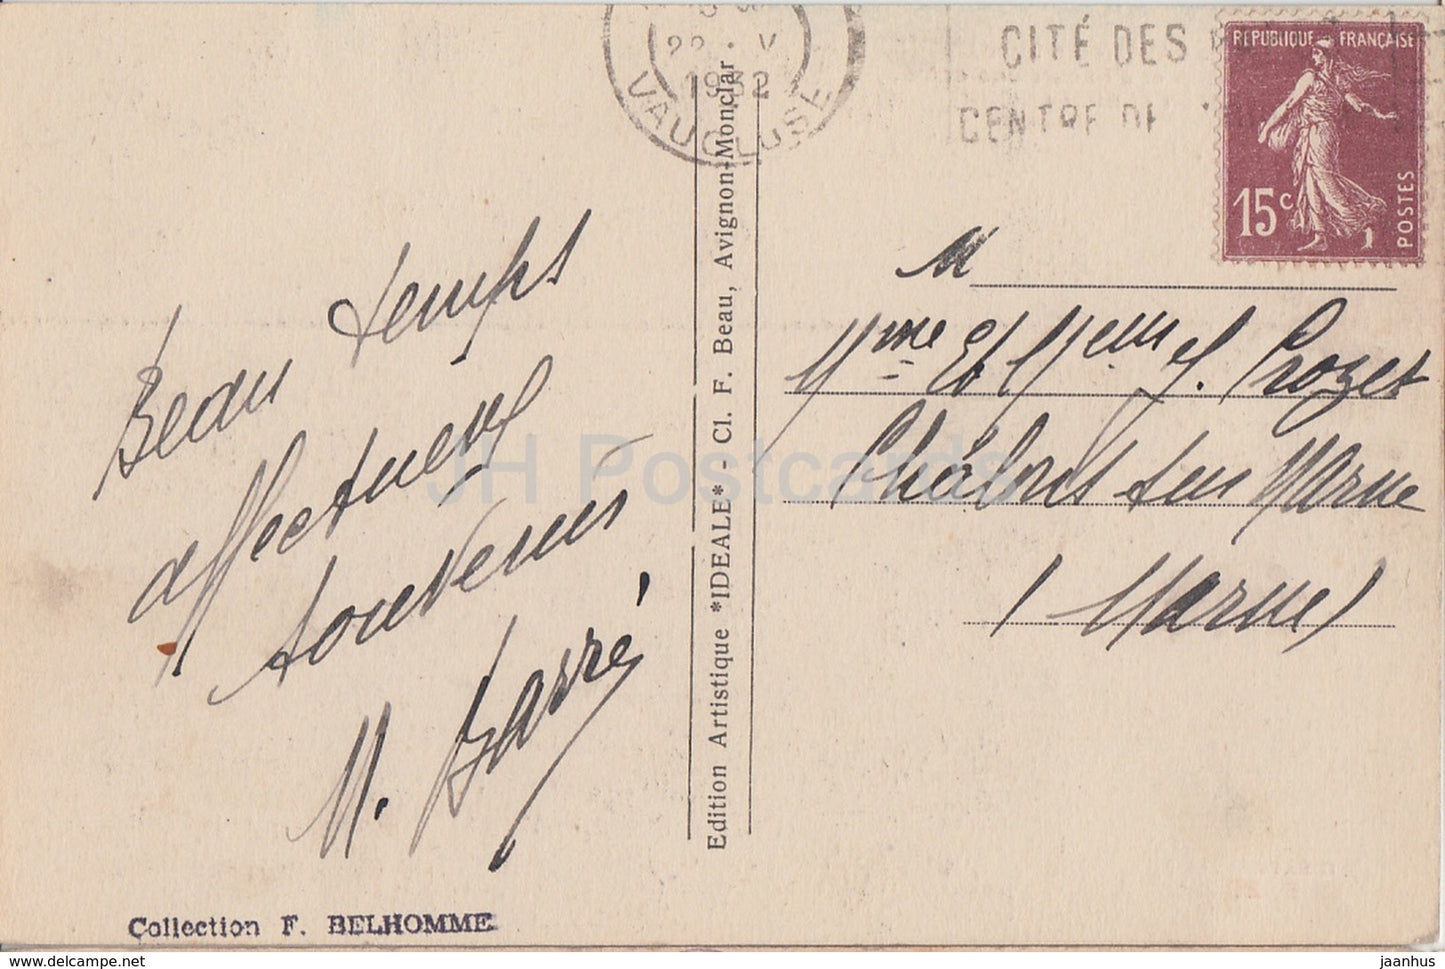 Le Pont du Gard - cote nord - Site Pittoresque - pont - carte postale ancienne - 1932 - France - occasion